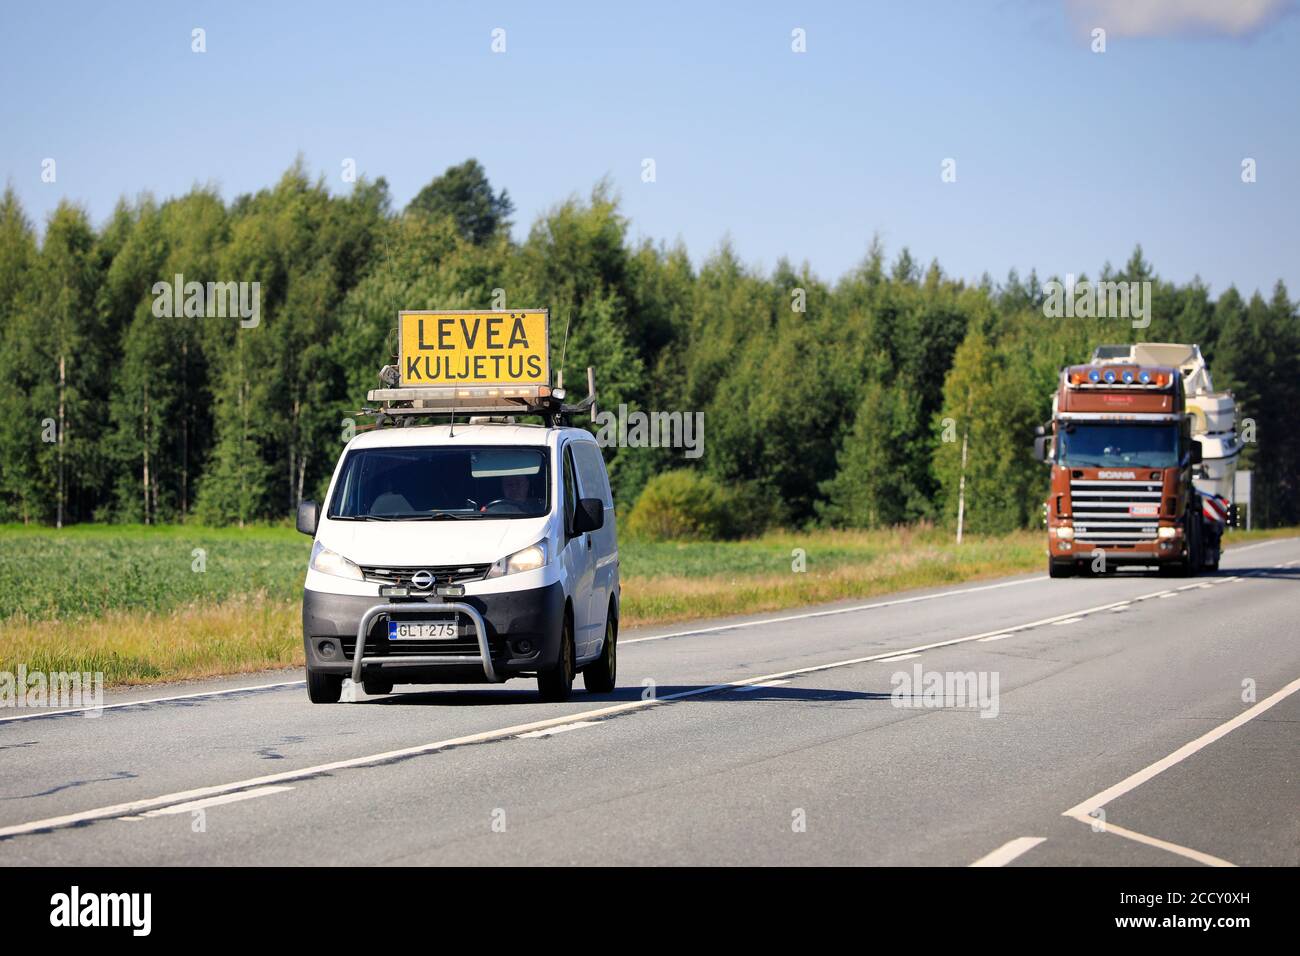 Pilotfahrzeug führt Überlasttransport eines Freizeitbootes auf der Autobahn 10. Tammela, Finnland. 21. August 2020. Stockfoto